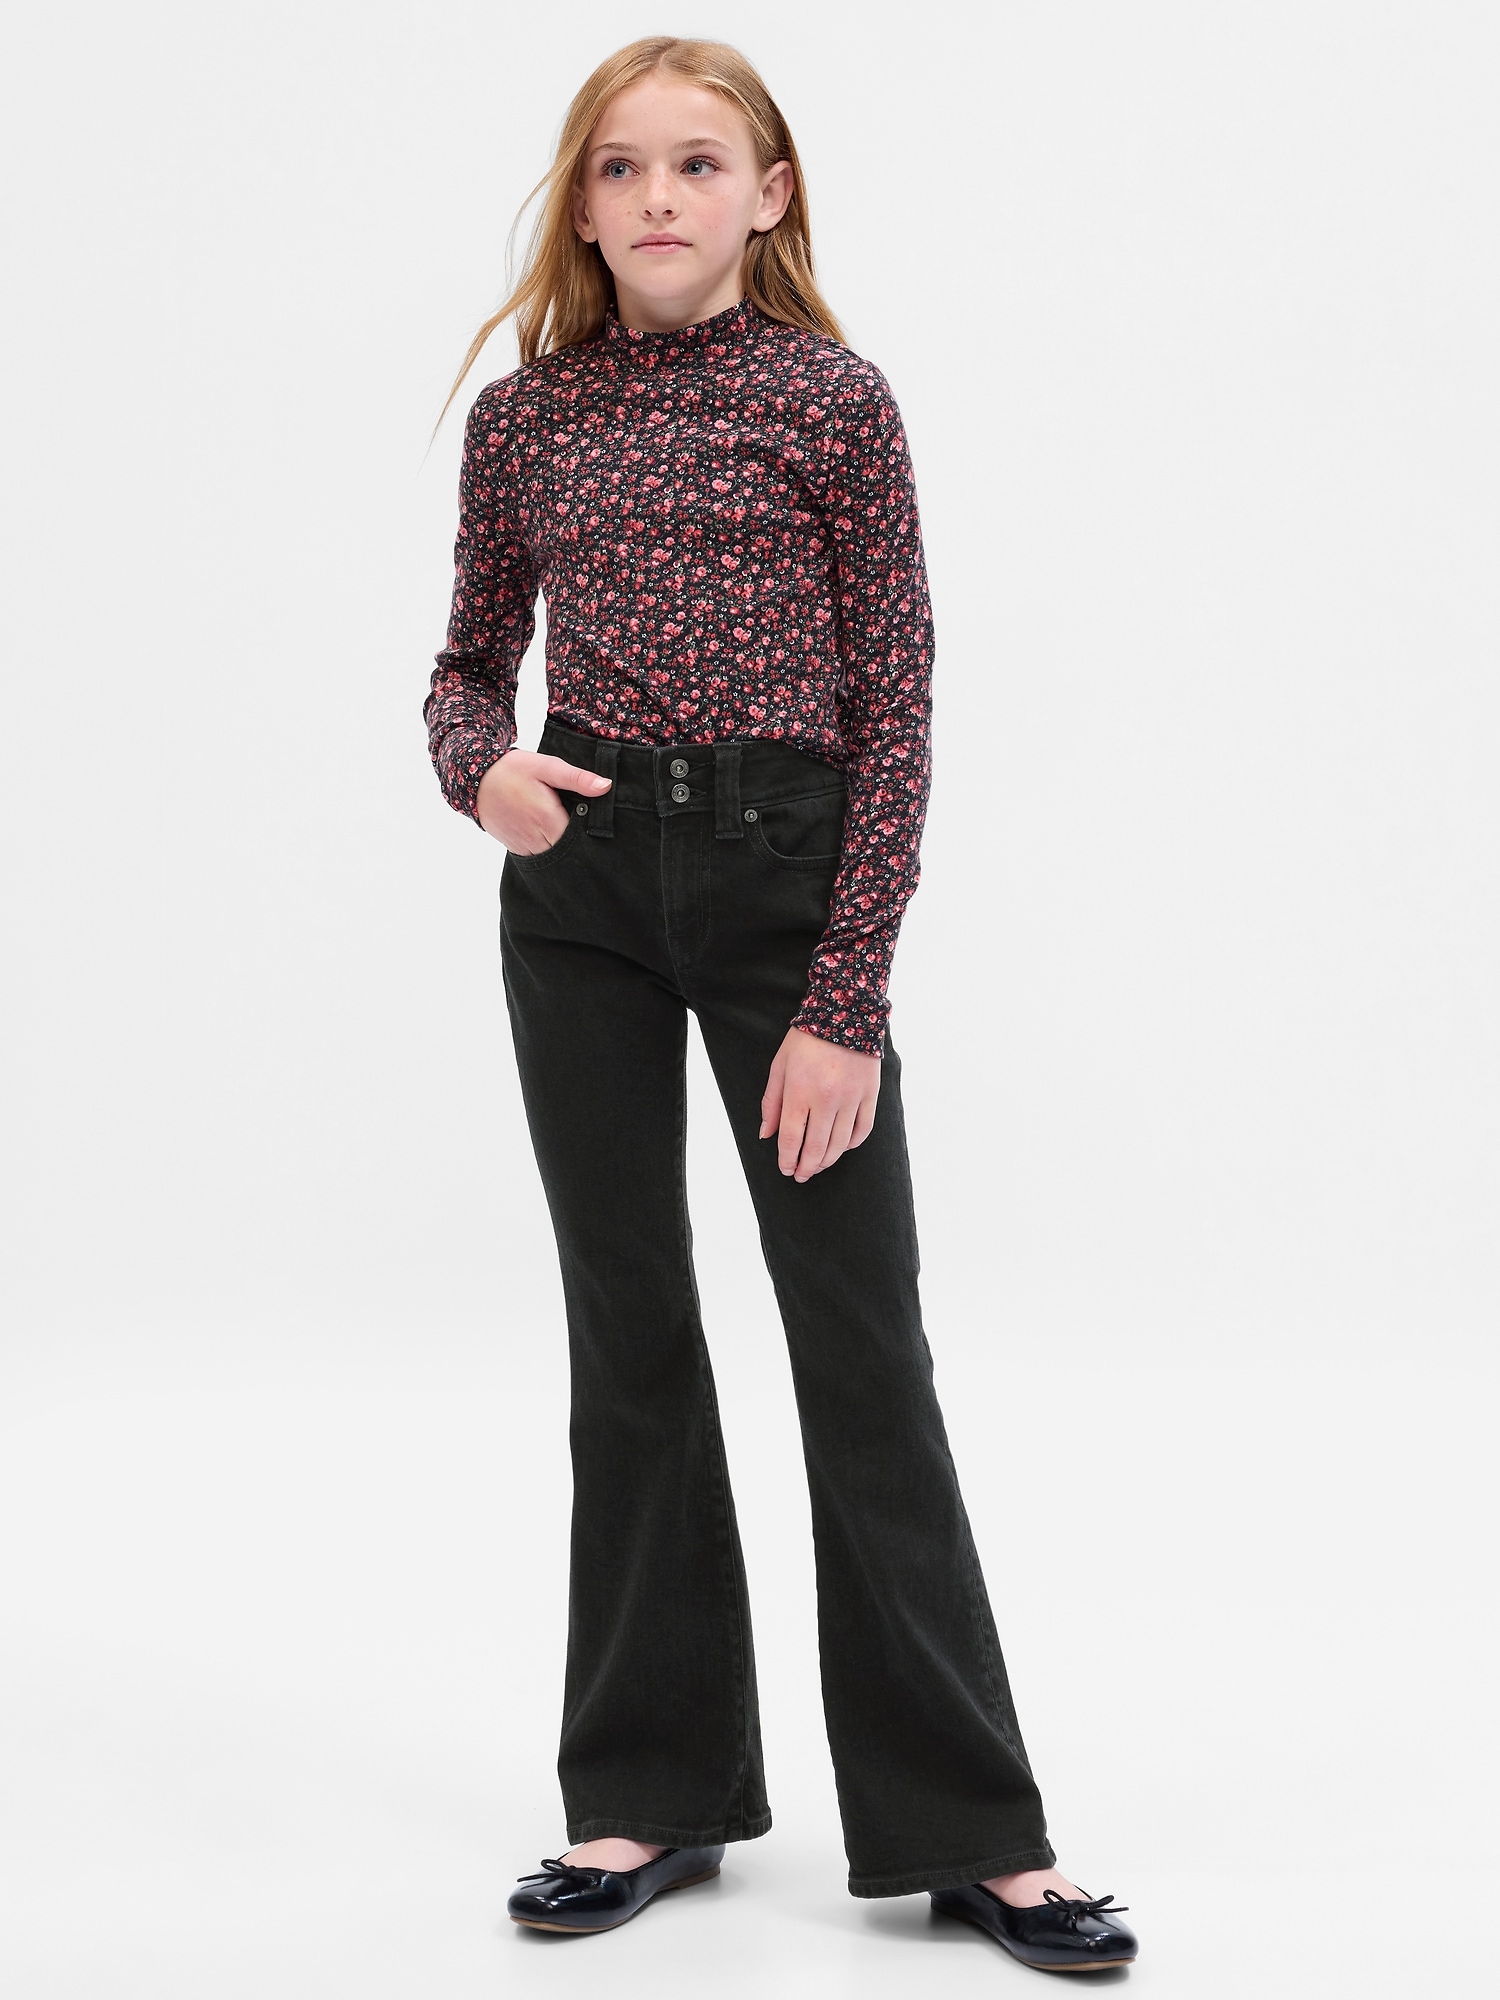 Teenage Girls' Jeans Slim-Fit Micro Bell-Bottom Pants Elastic